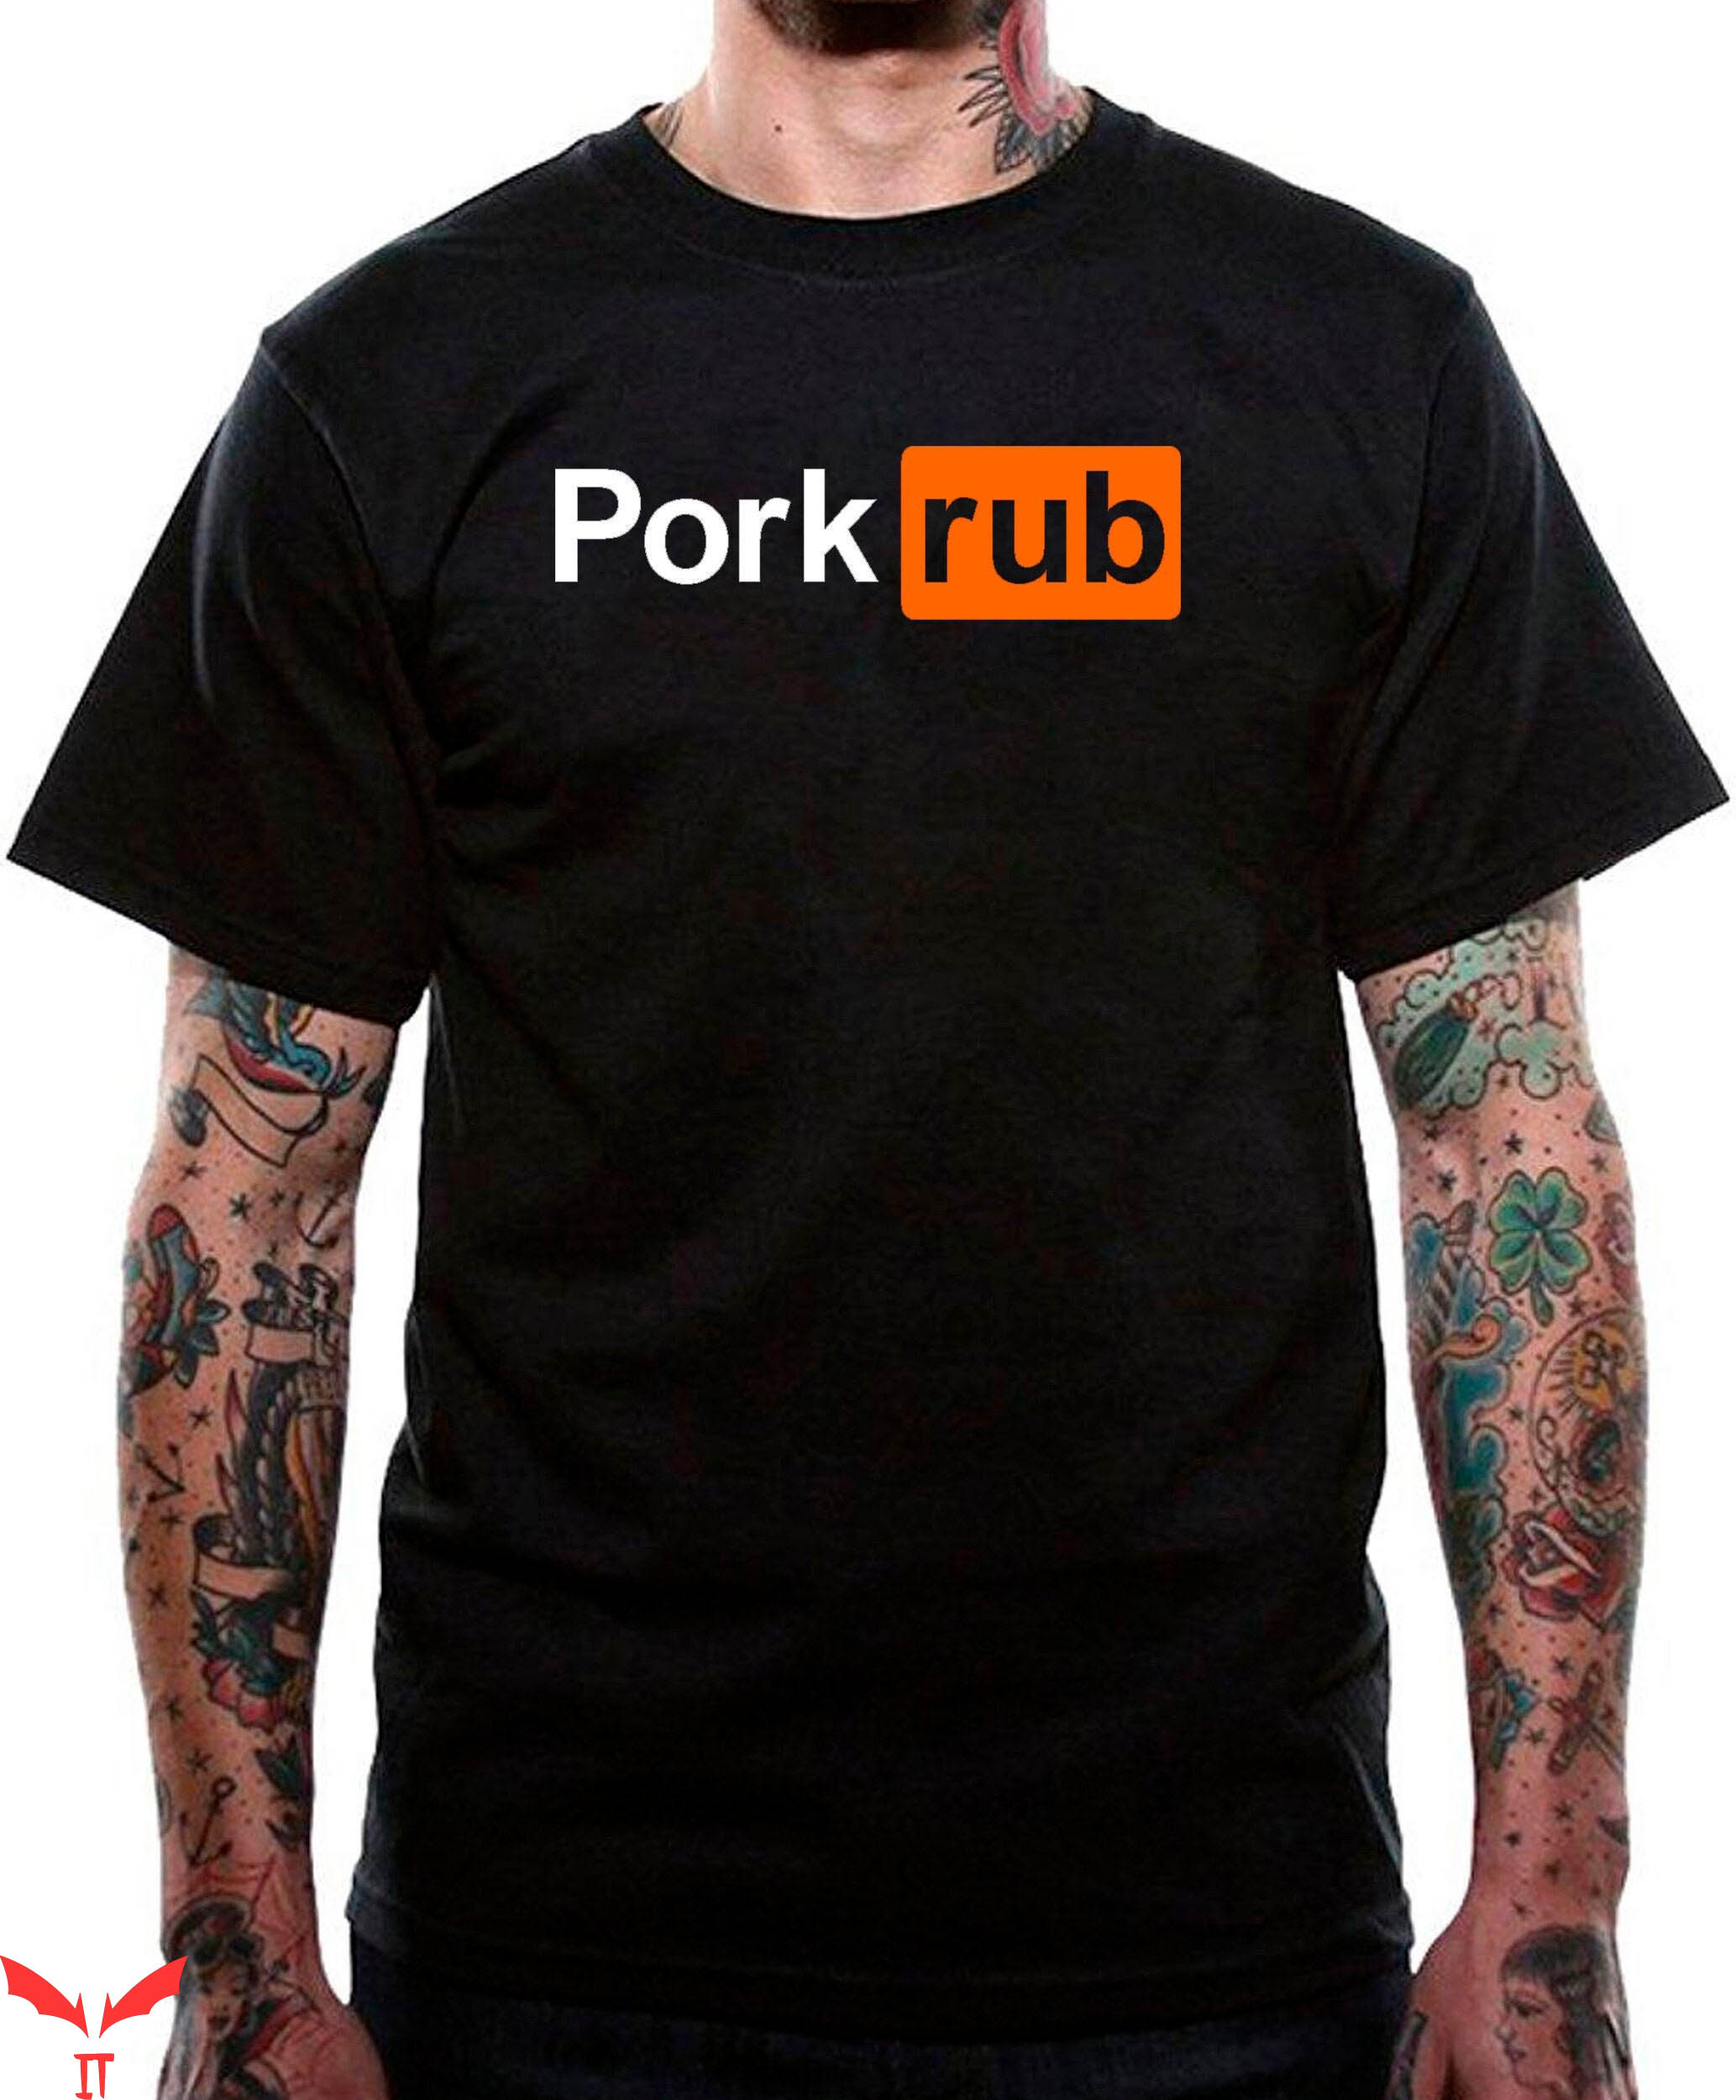 Porn Hub T-Shirt Pork Rub Pornhub Parody Offensive Sexual